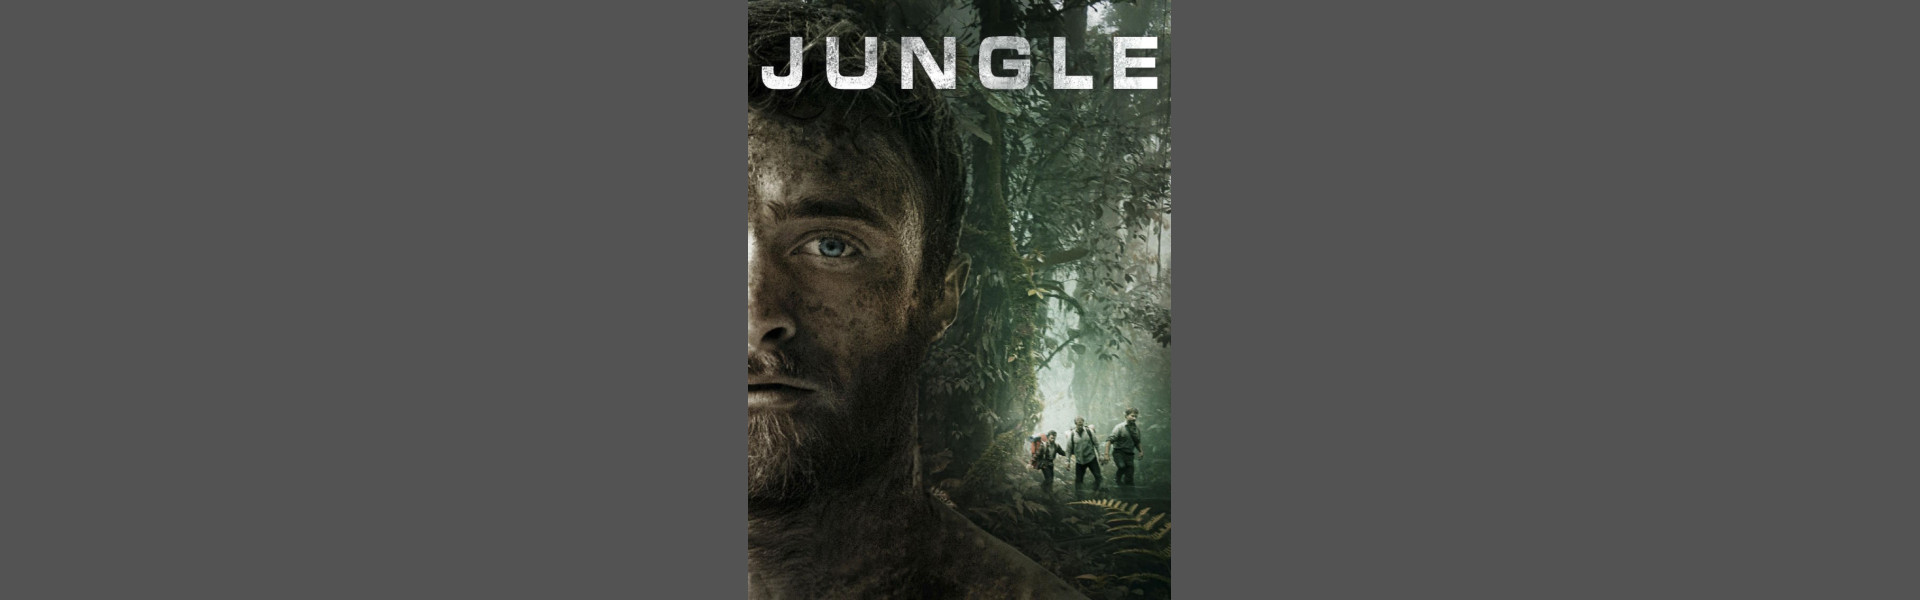 Jungle Cover